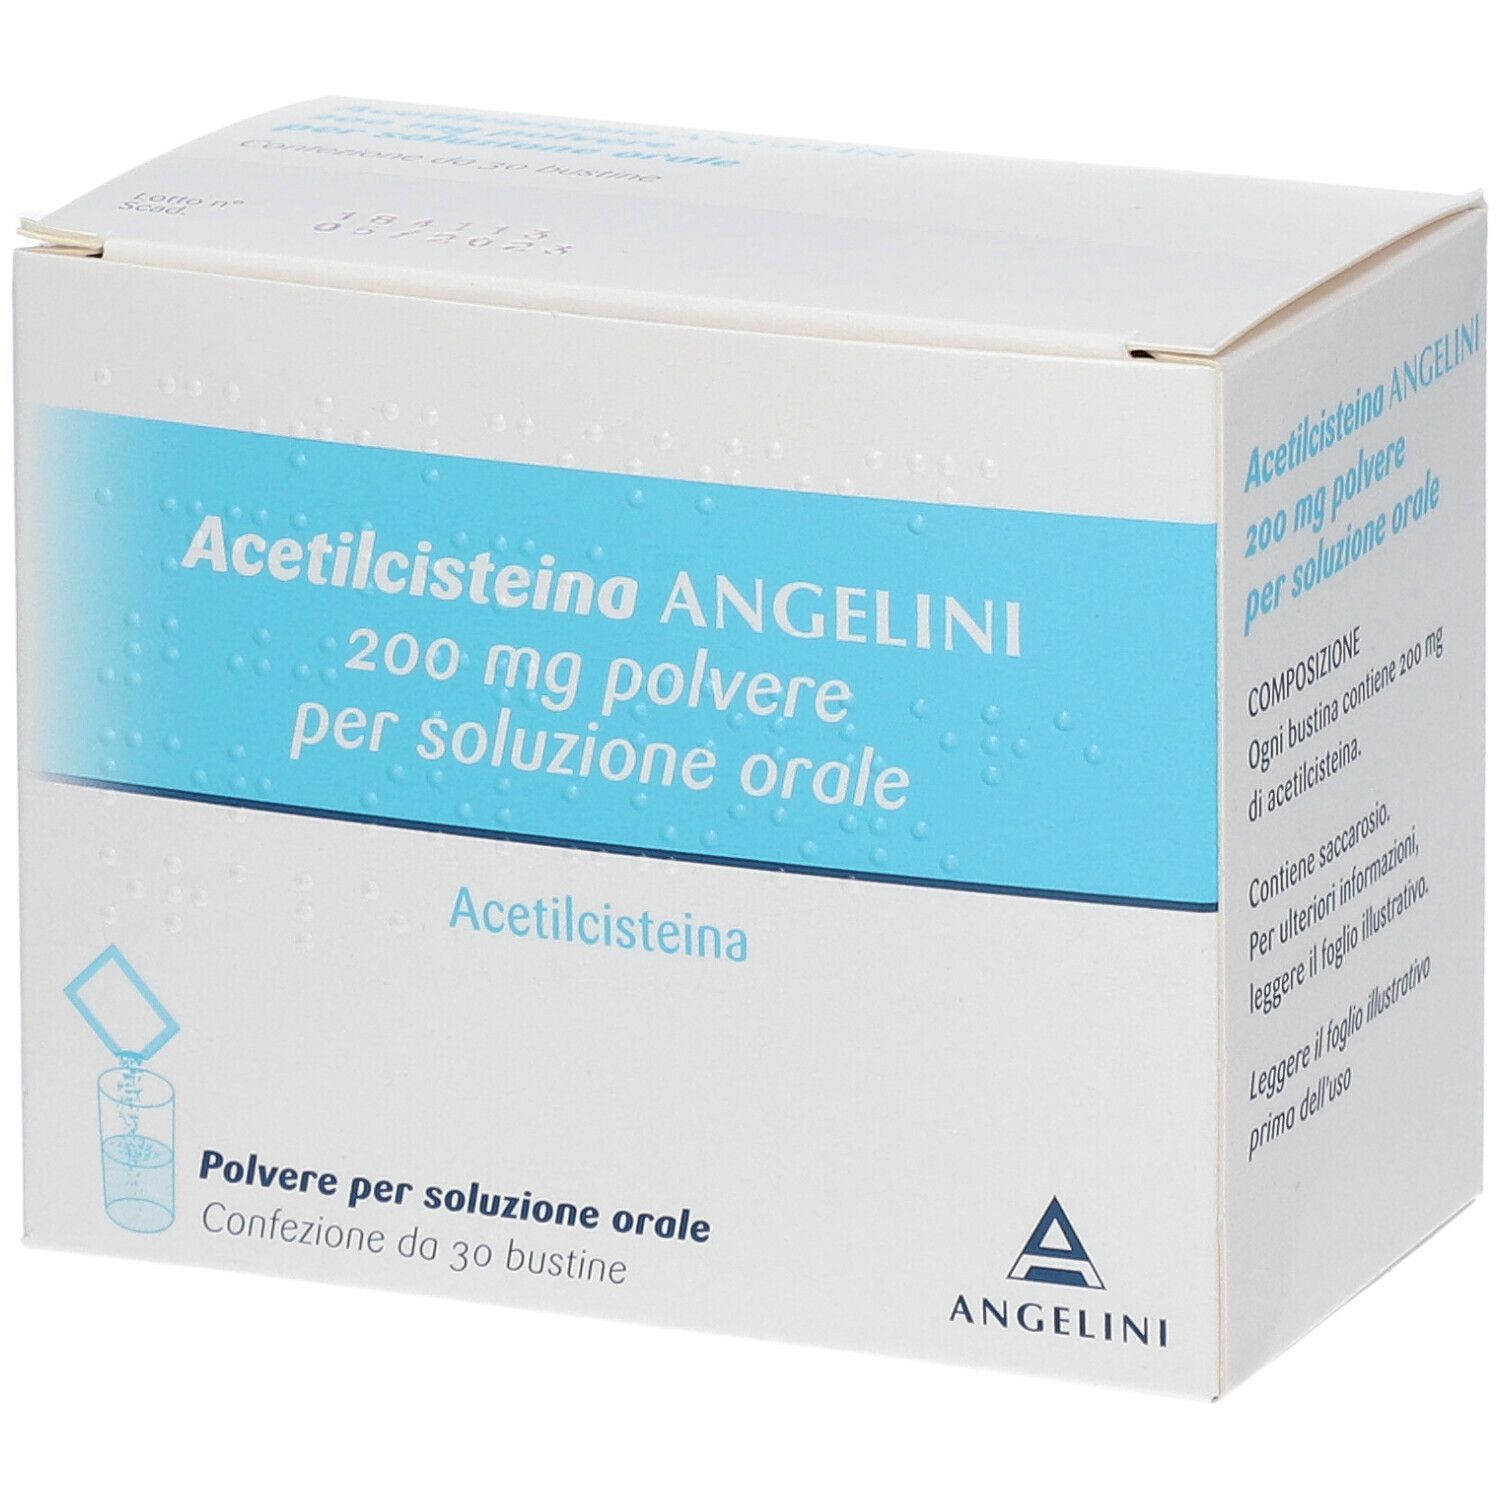 Acetilcisteina Angenerico 200 mg Polvere per Soluzione Orale